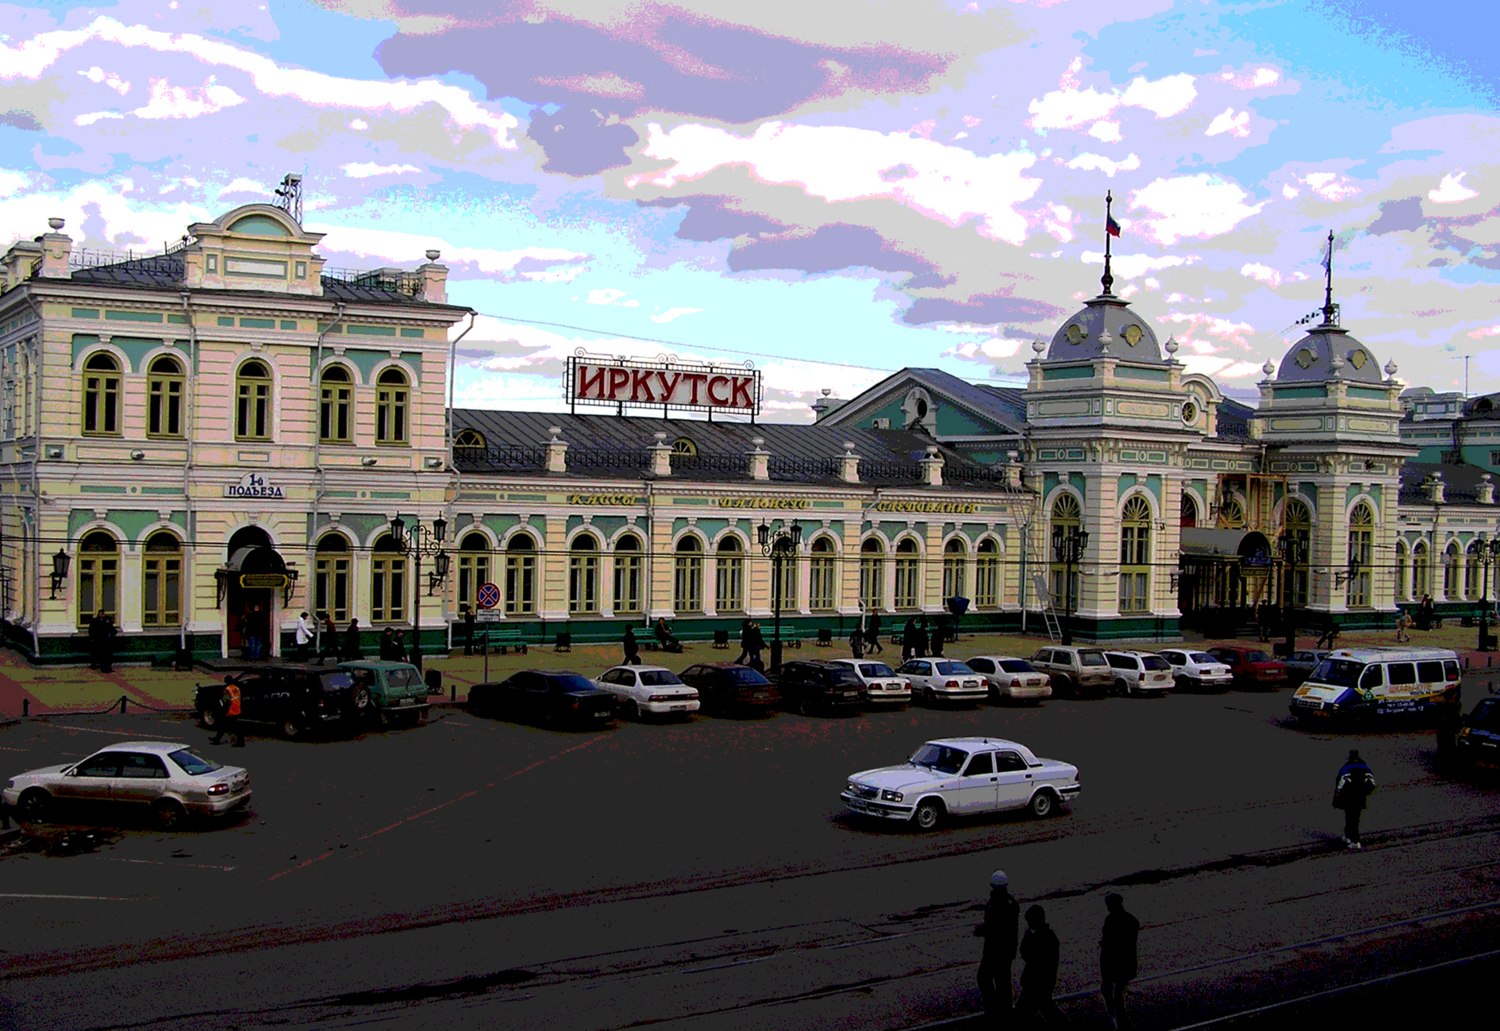 Иркутск, железнодорожный вокзал